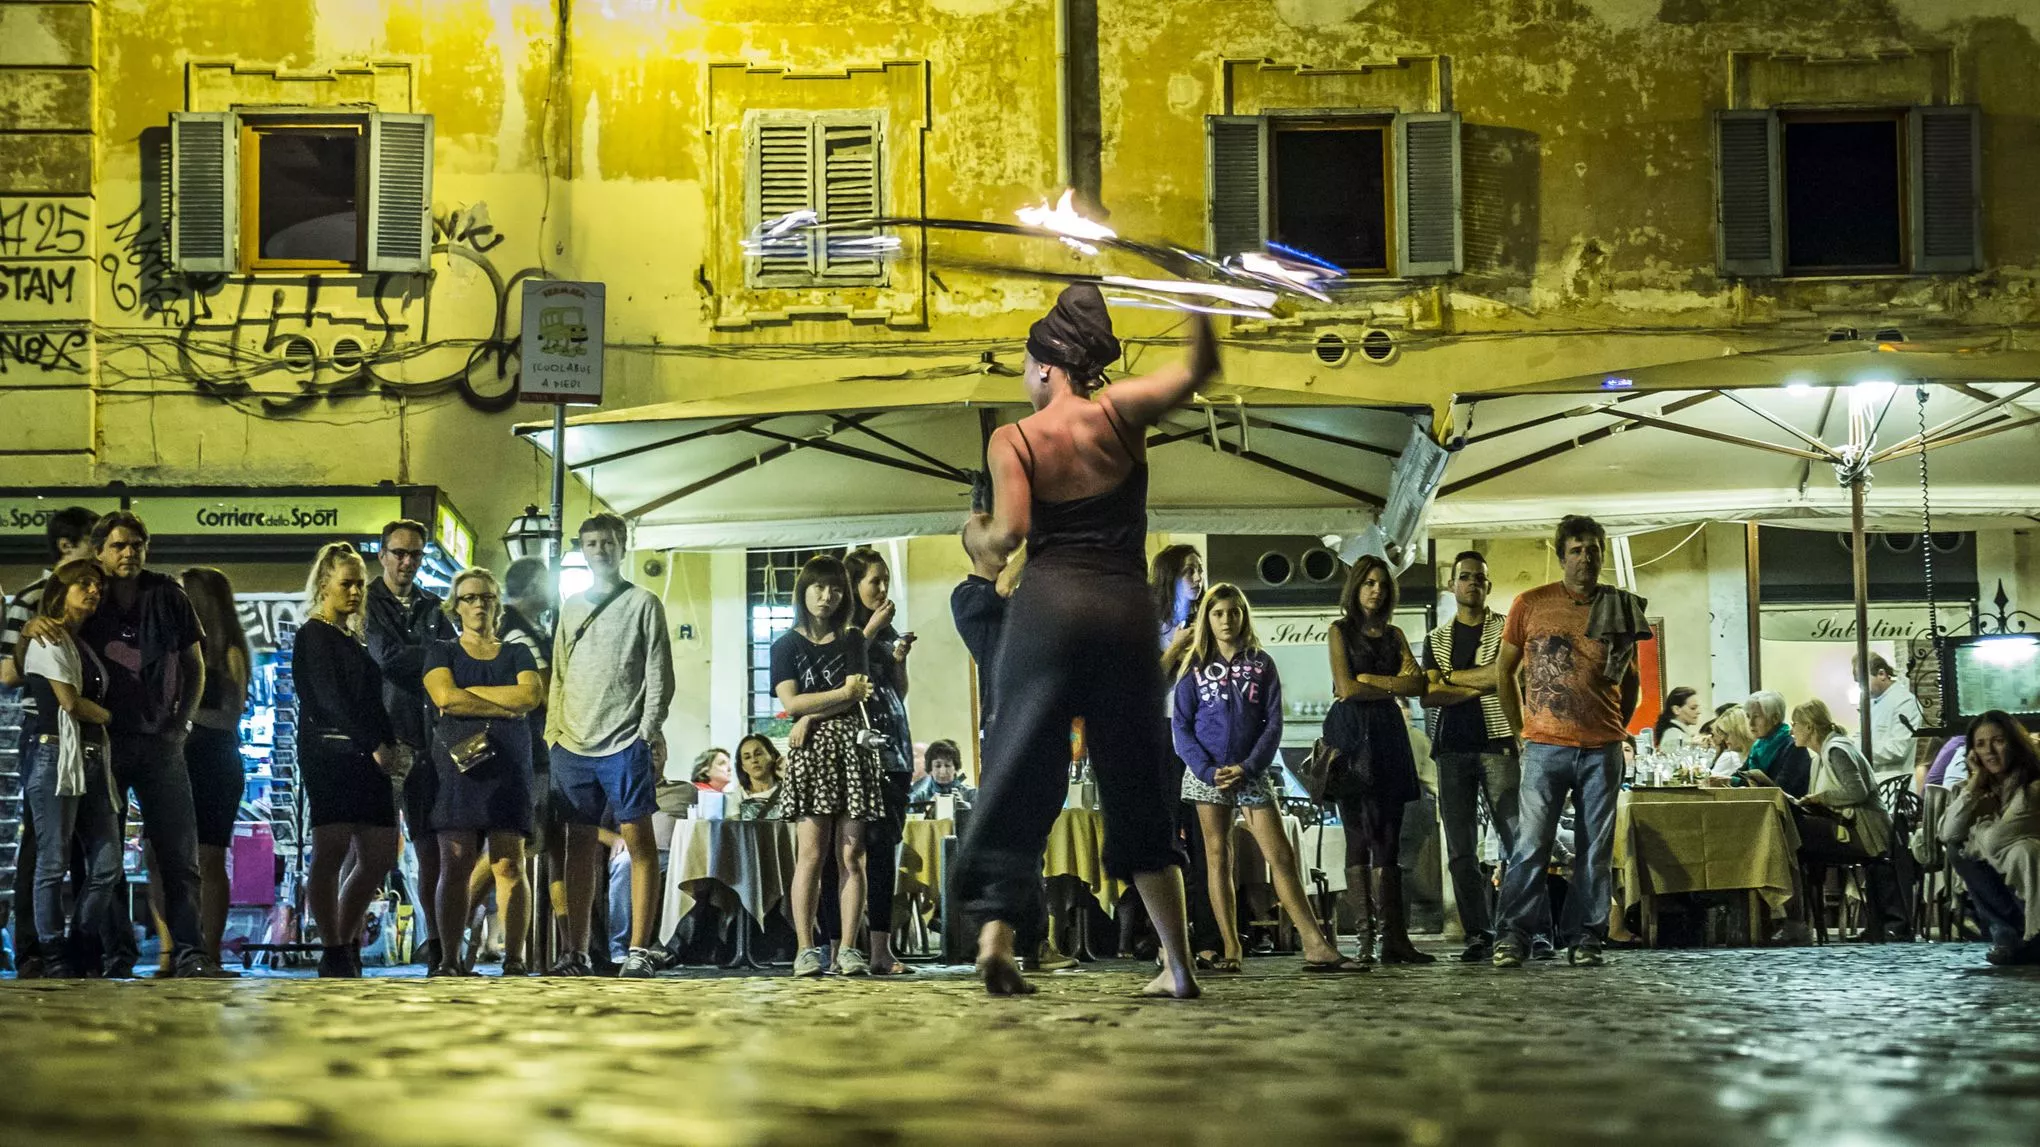 Langweilig ist es aber nicht: Am Abend gibt eine Feuerkünstlerin eine Showeinlage auf der Piazza Santa Maria